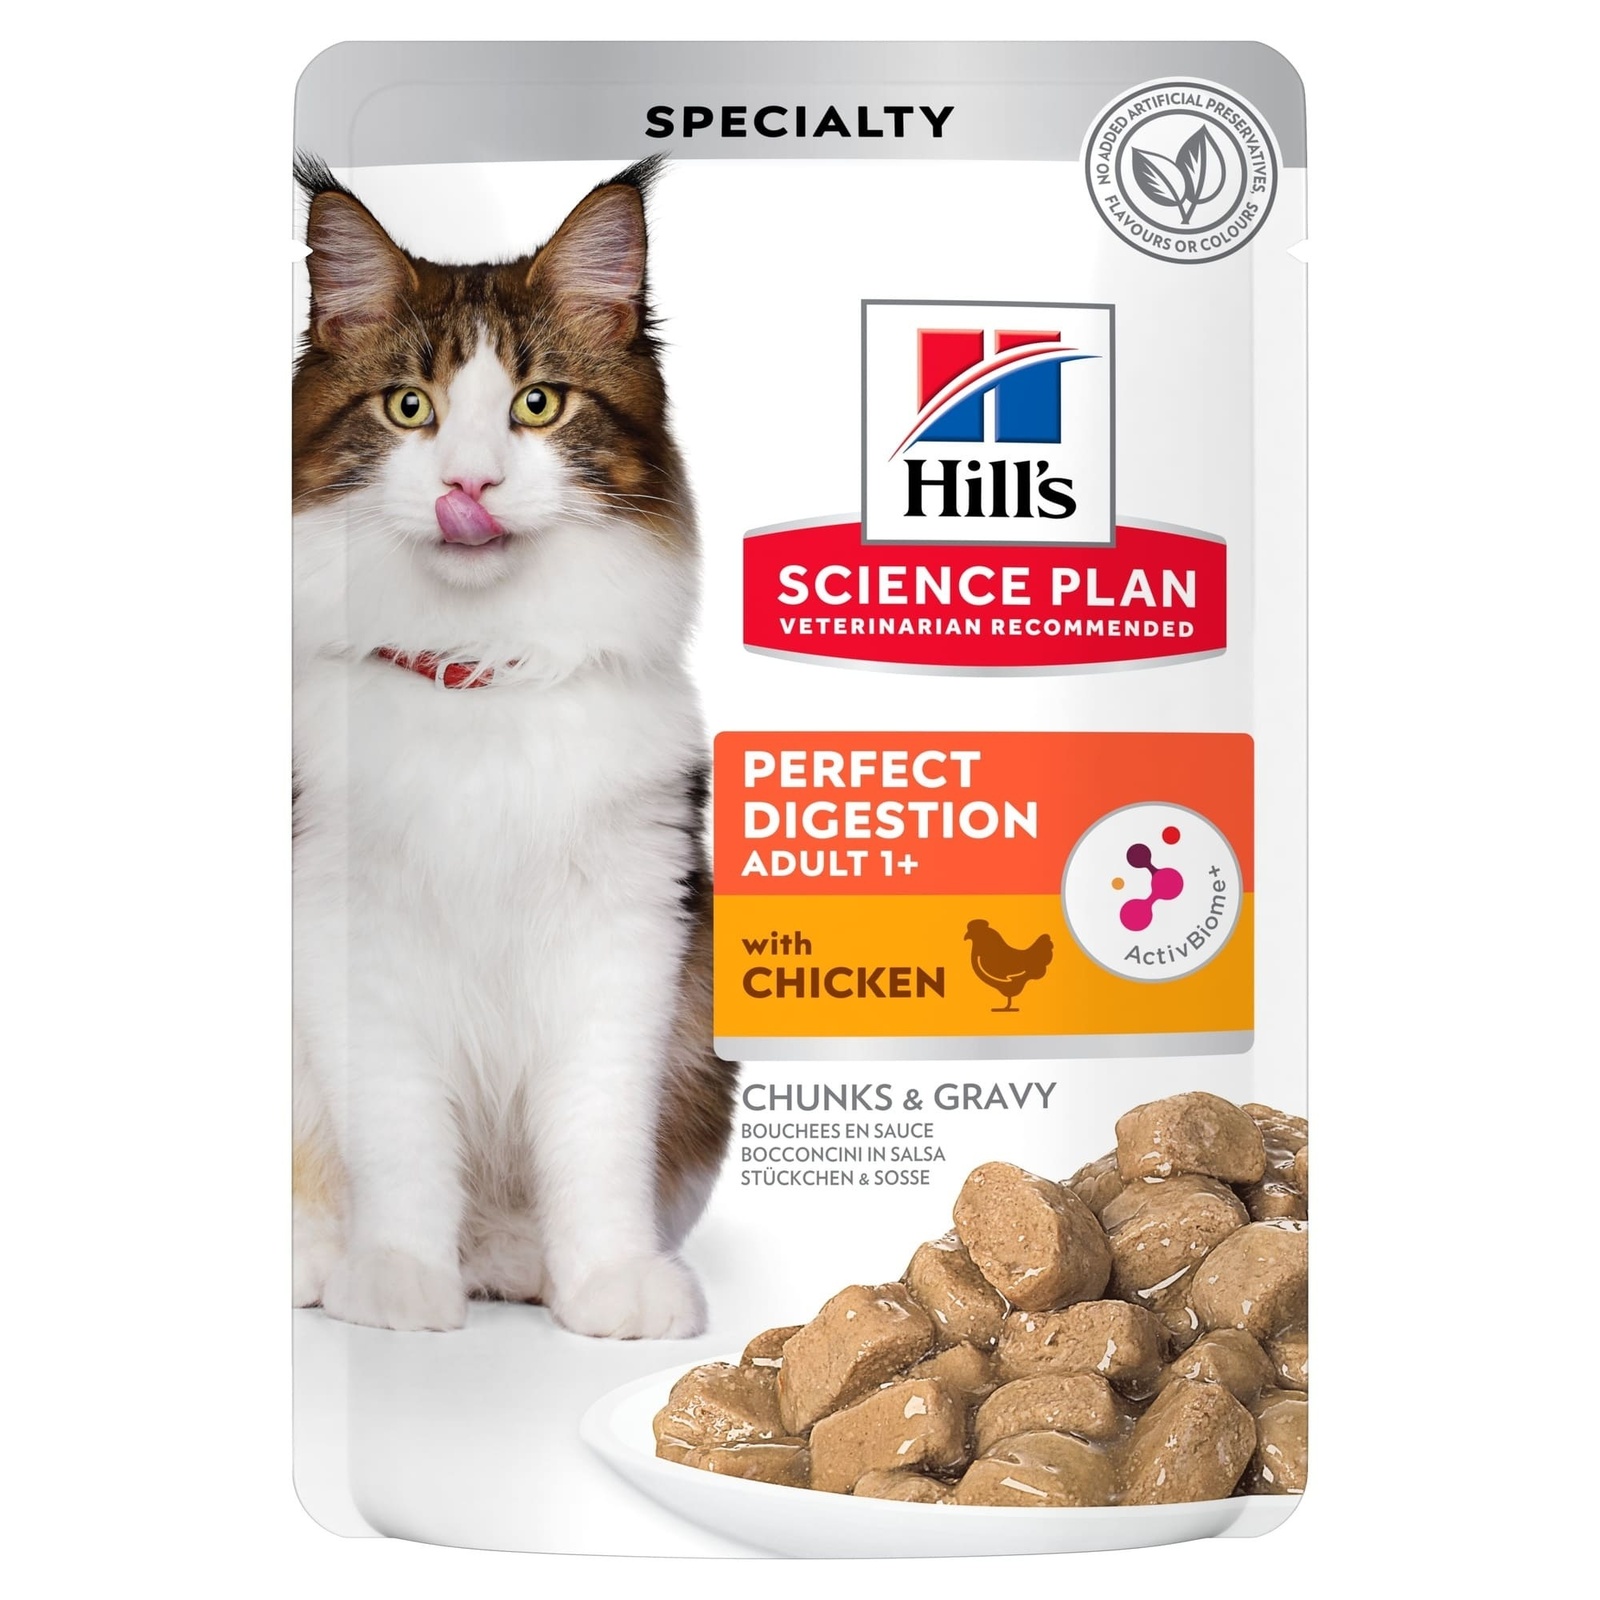 Hill's консервы паучи для кошек Идеальное Пищеварение (1,02 кг) Hill's консервы паучи для кошек Идеальное Пищеварение (1,02 кг) - фото 1